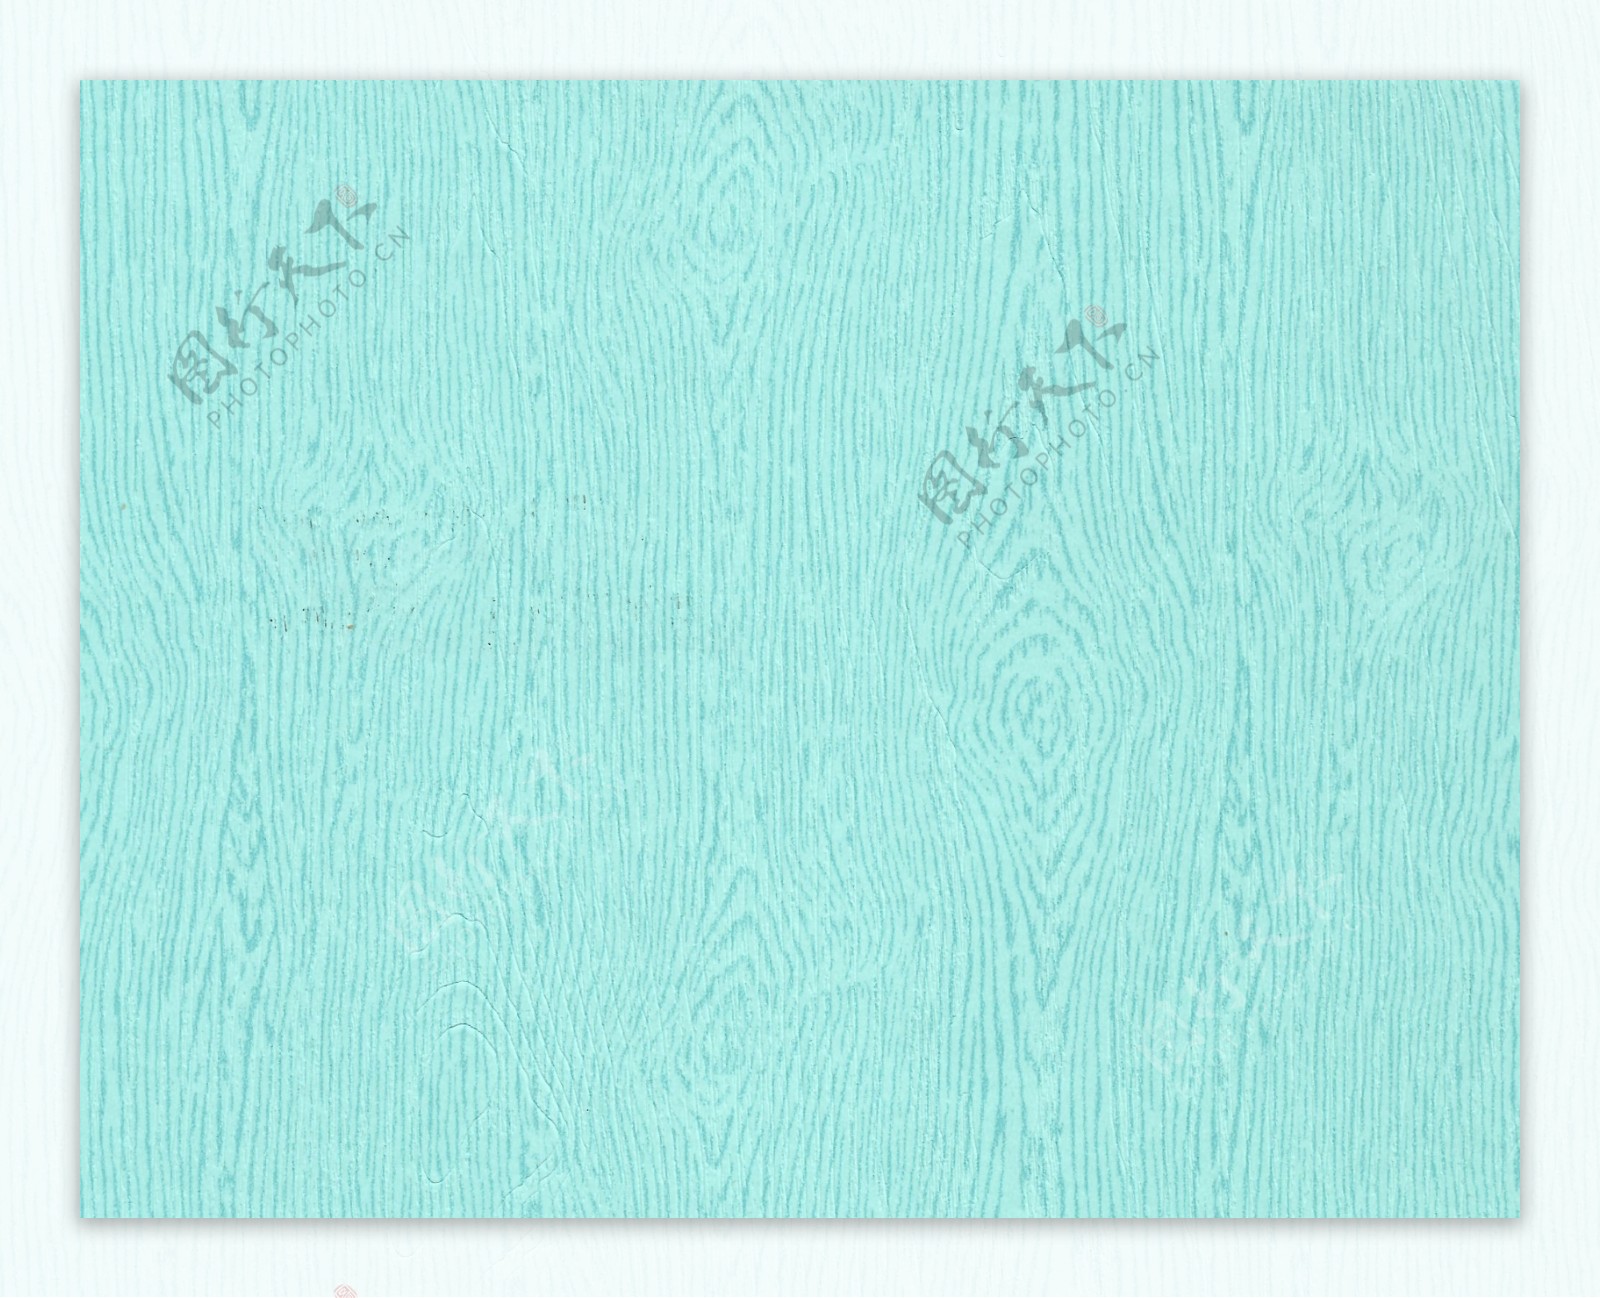 高清特种纸古风背景素材木纹蓝